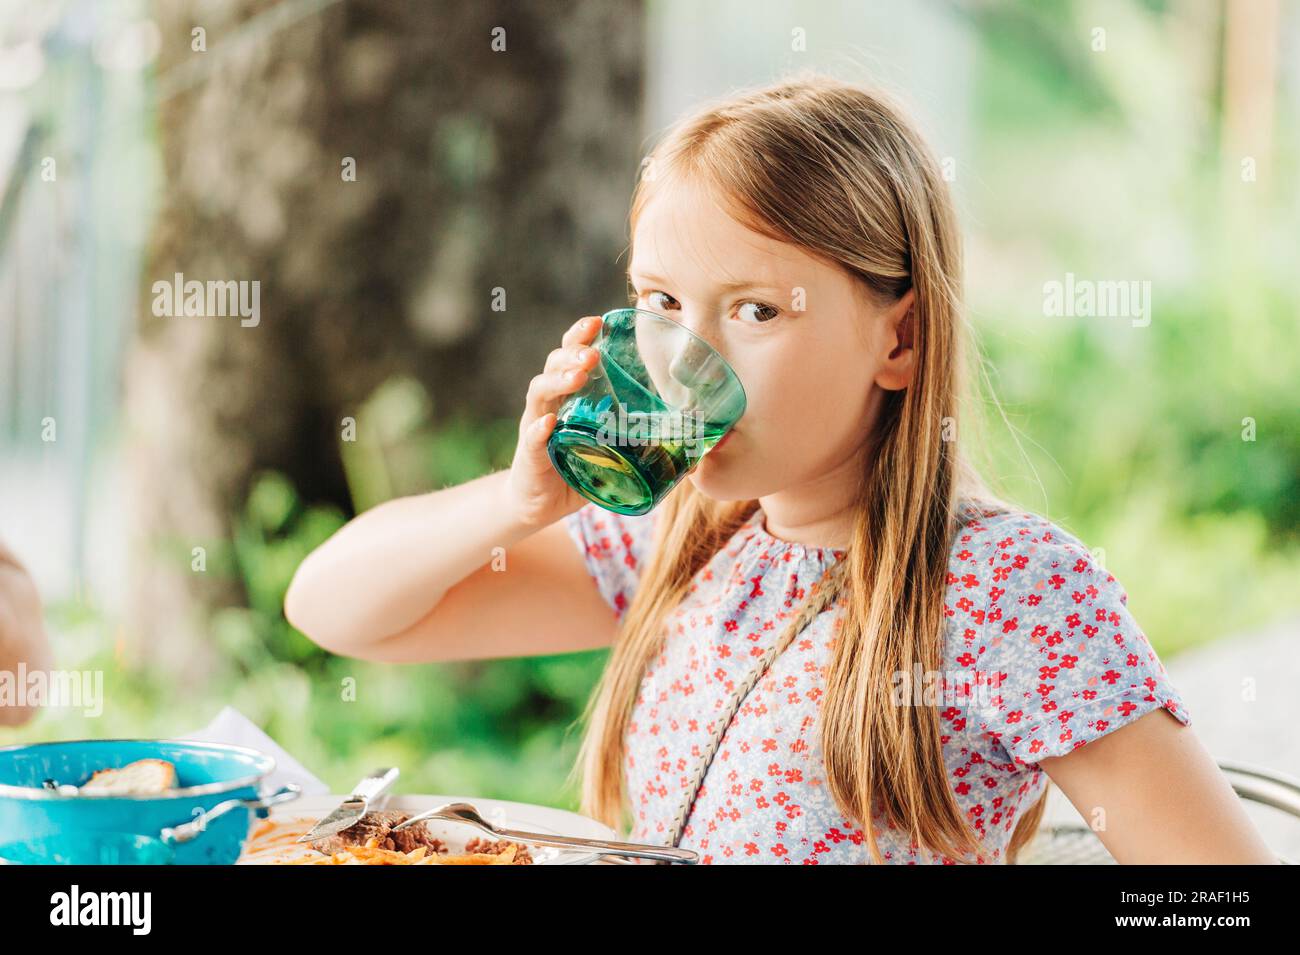 Little girl eating dinner on a terrace in outdoor restaurant Stock Photo